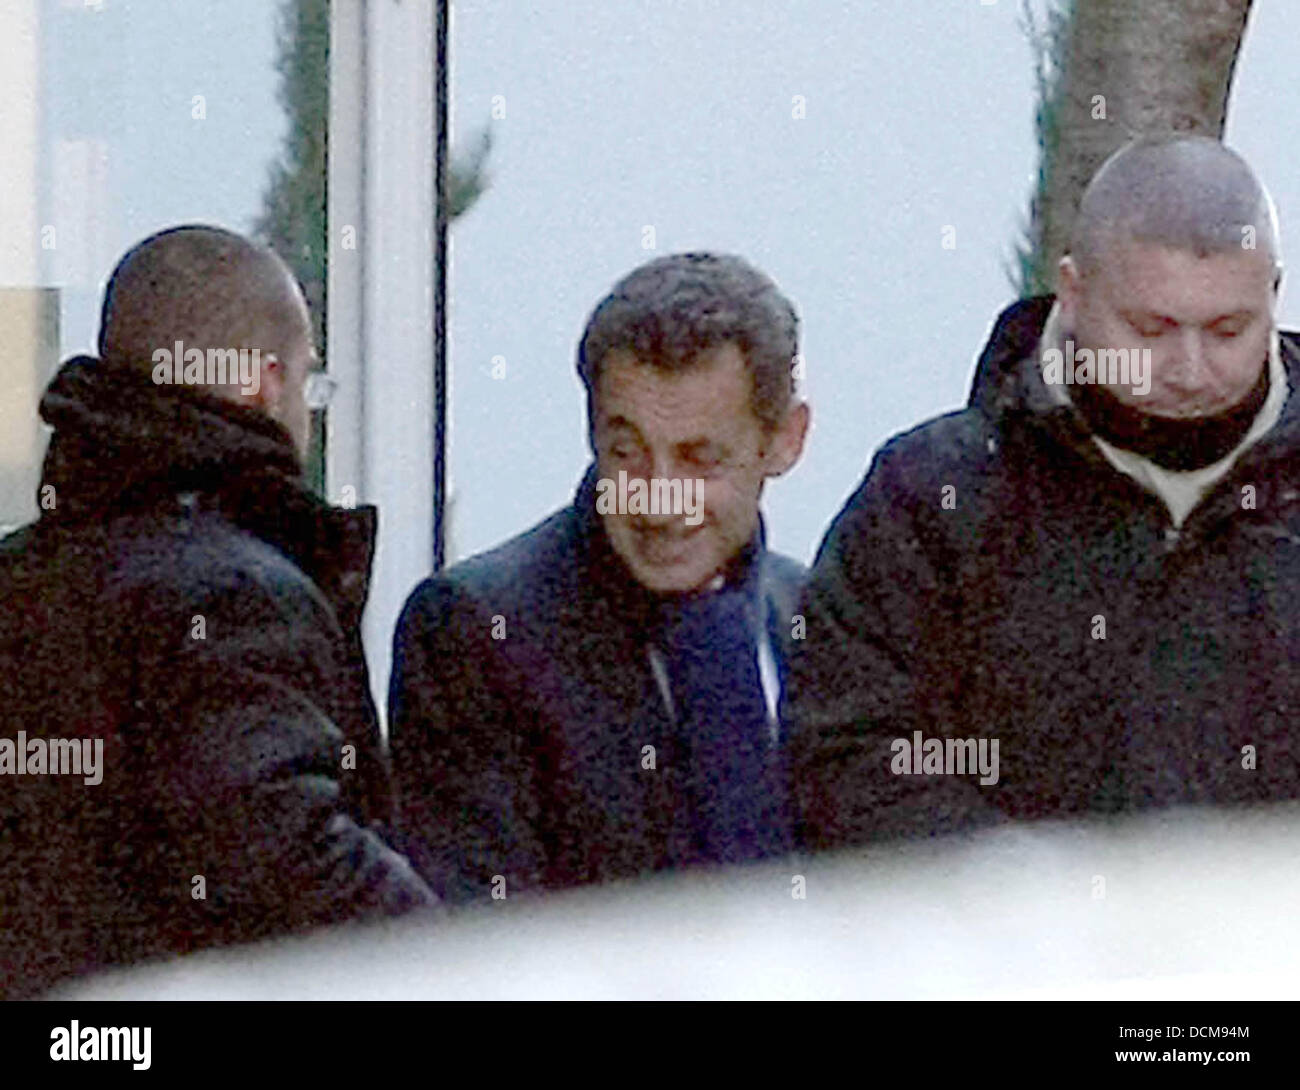 Il presidente francese Nicolas Sarkozy è visto lasciare la Clinique de la Muette ospedale dove sua moglie Carla Bruni recentemente ha dato alla luce una bambina. Il bambino è stato tre settimane in ritardo, Parigi Francia - 20.10.11 Foto Stock